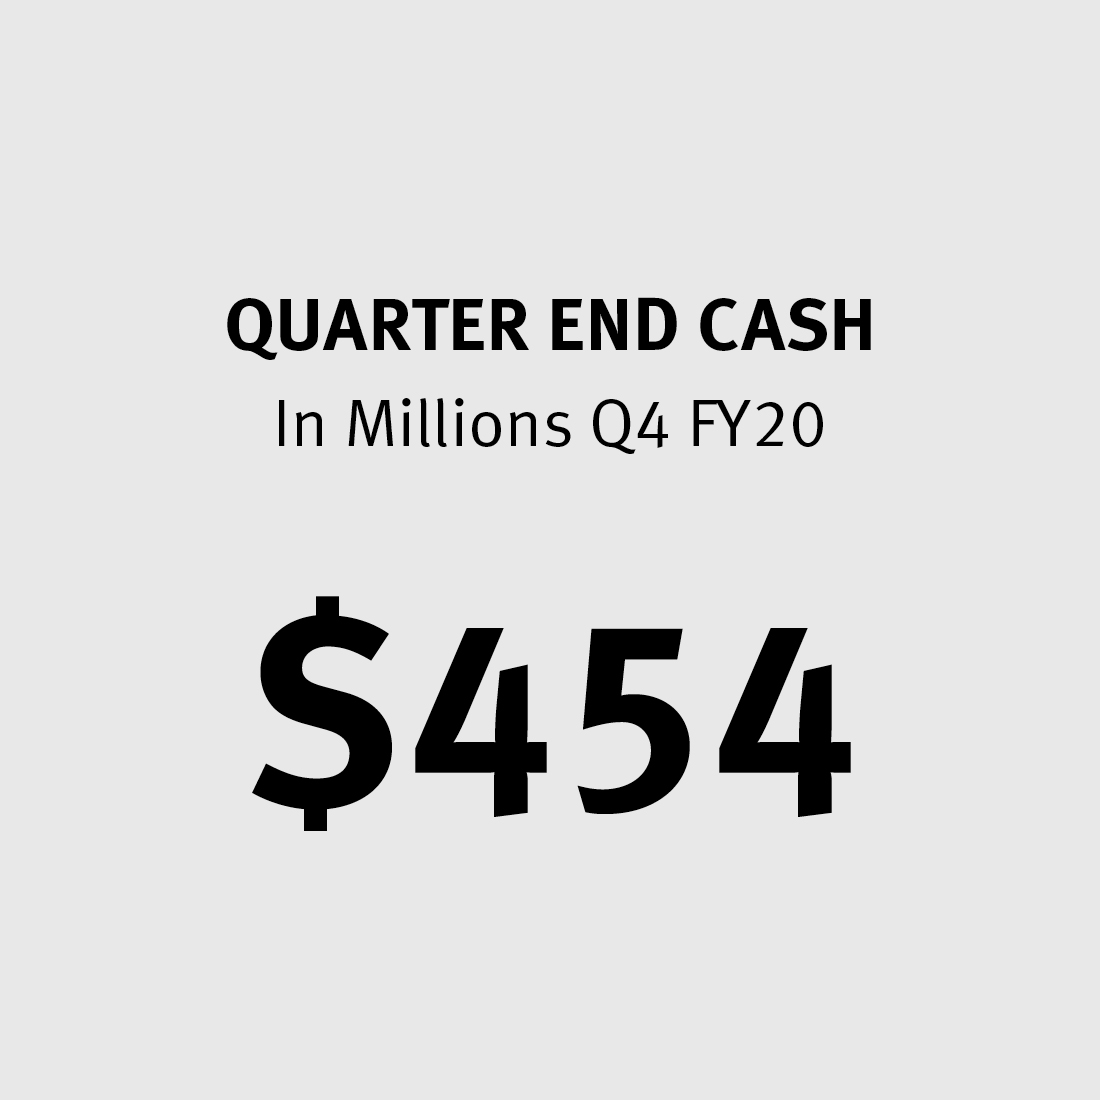 Quarter End Cash $454M